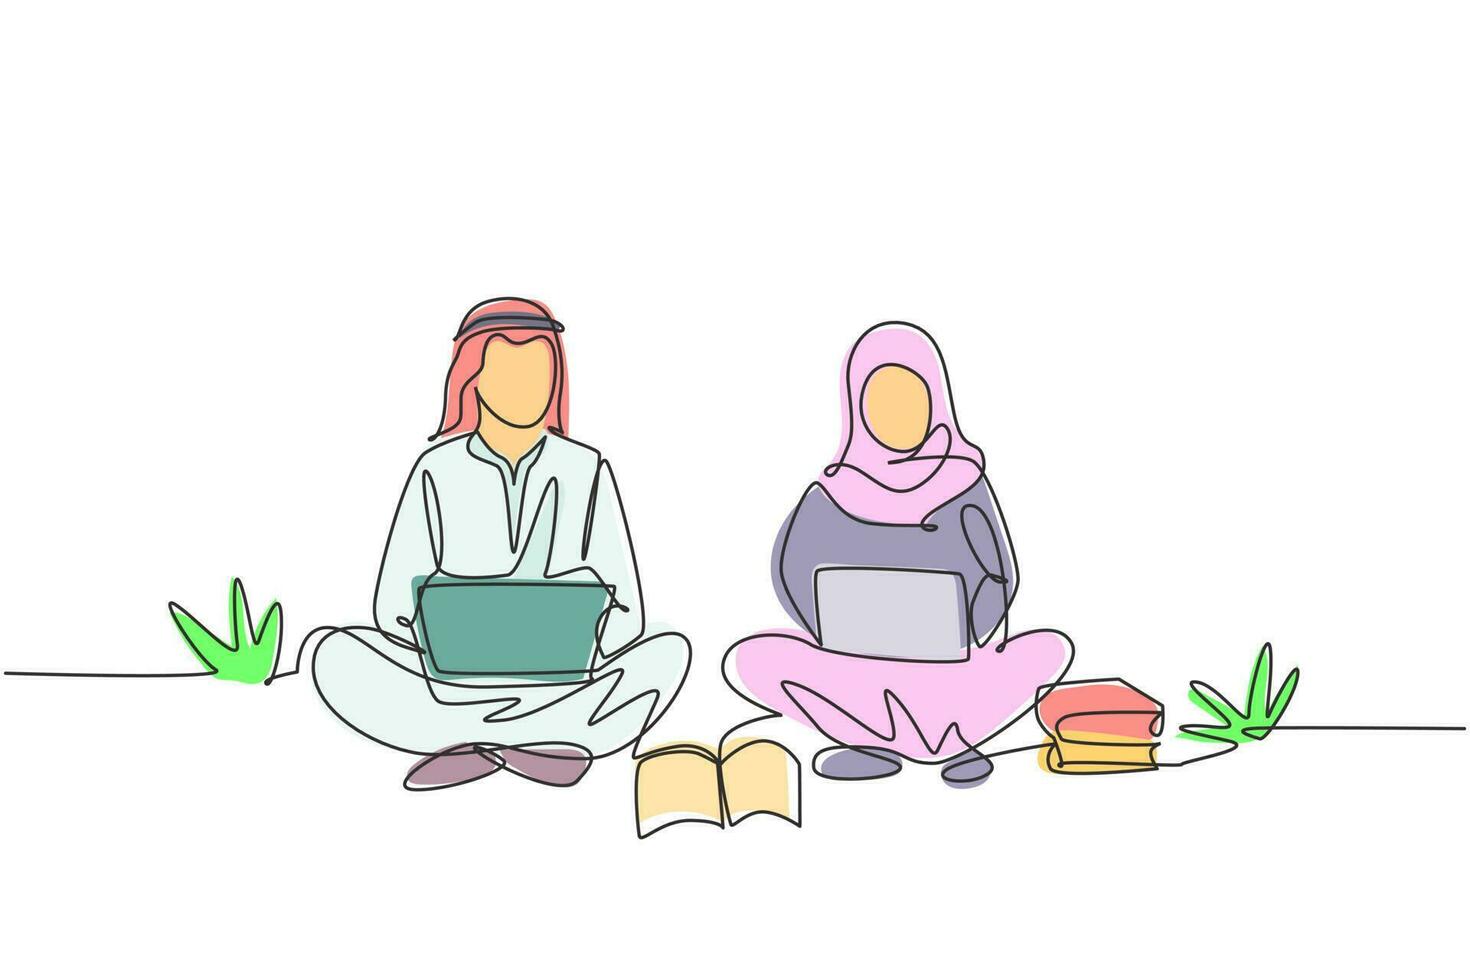 einzelne ein strichzeichnung arabisches paar mit laptop im park zusammen sitzen. freiberuflich, Fernstudium, Online-Kurse, Studienkonzept. durchgehende Linie zeichnen Design-Grafik-Vektor-Illustration vektor